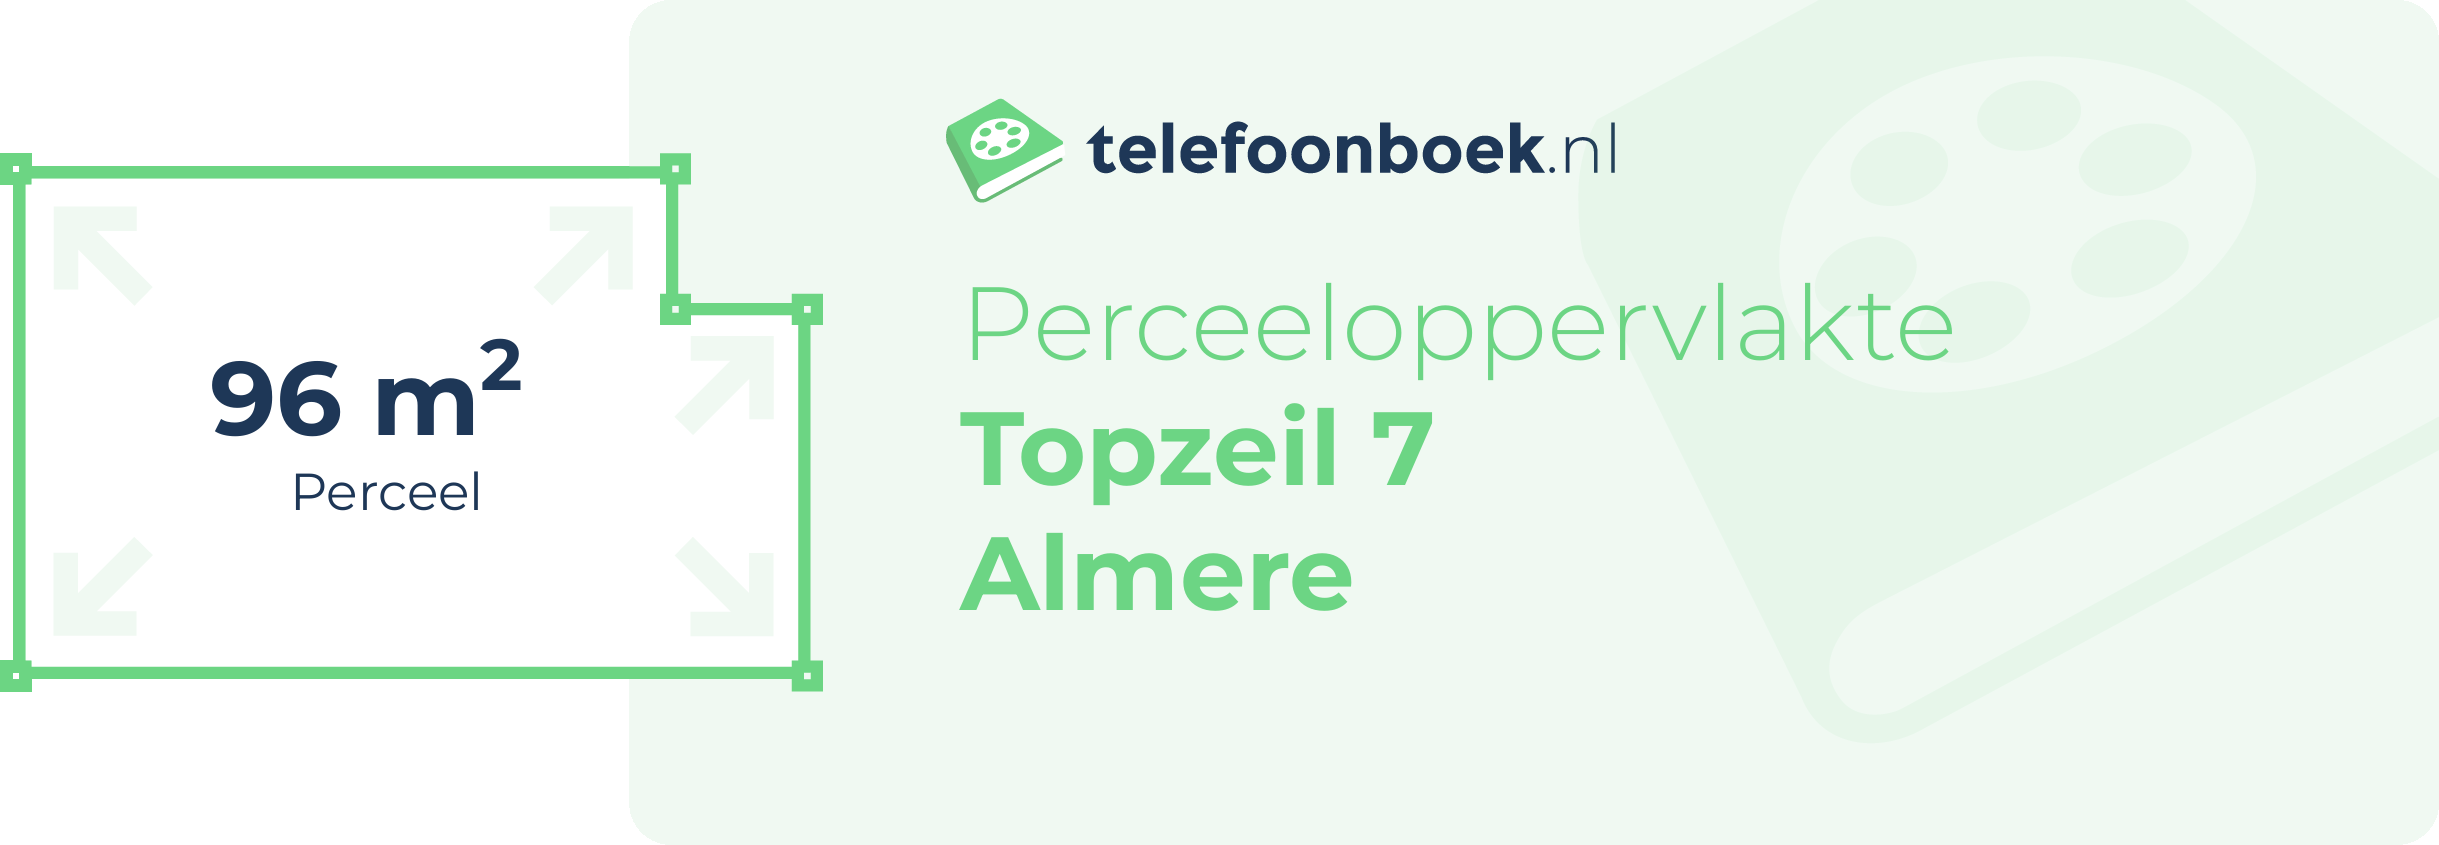 Perceeloppervlakte Topzeil 7 Almere